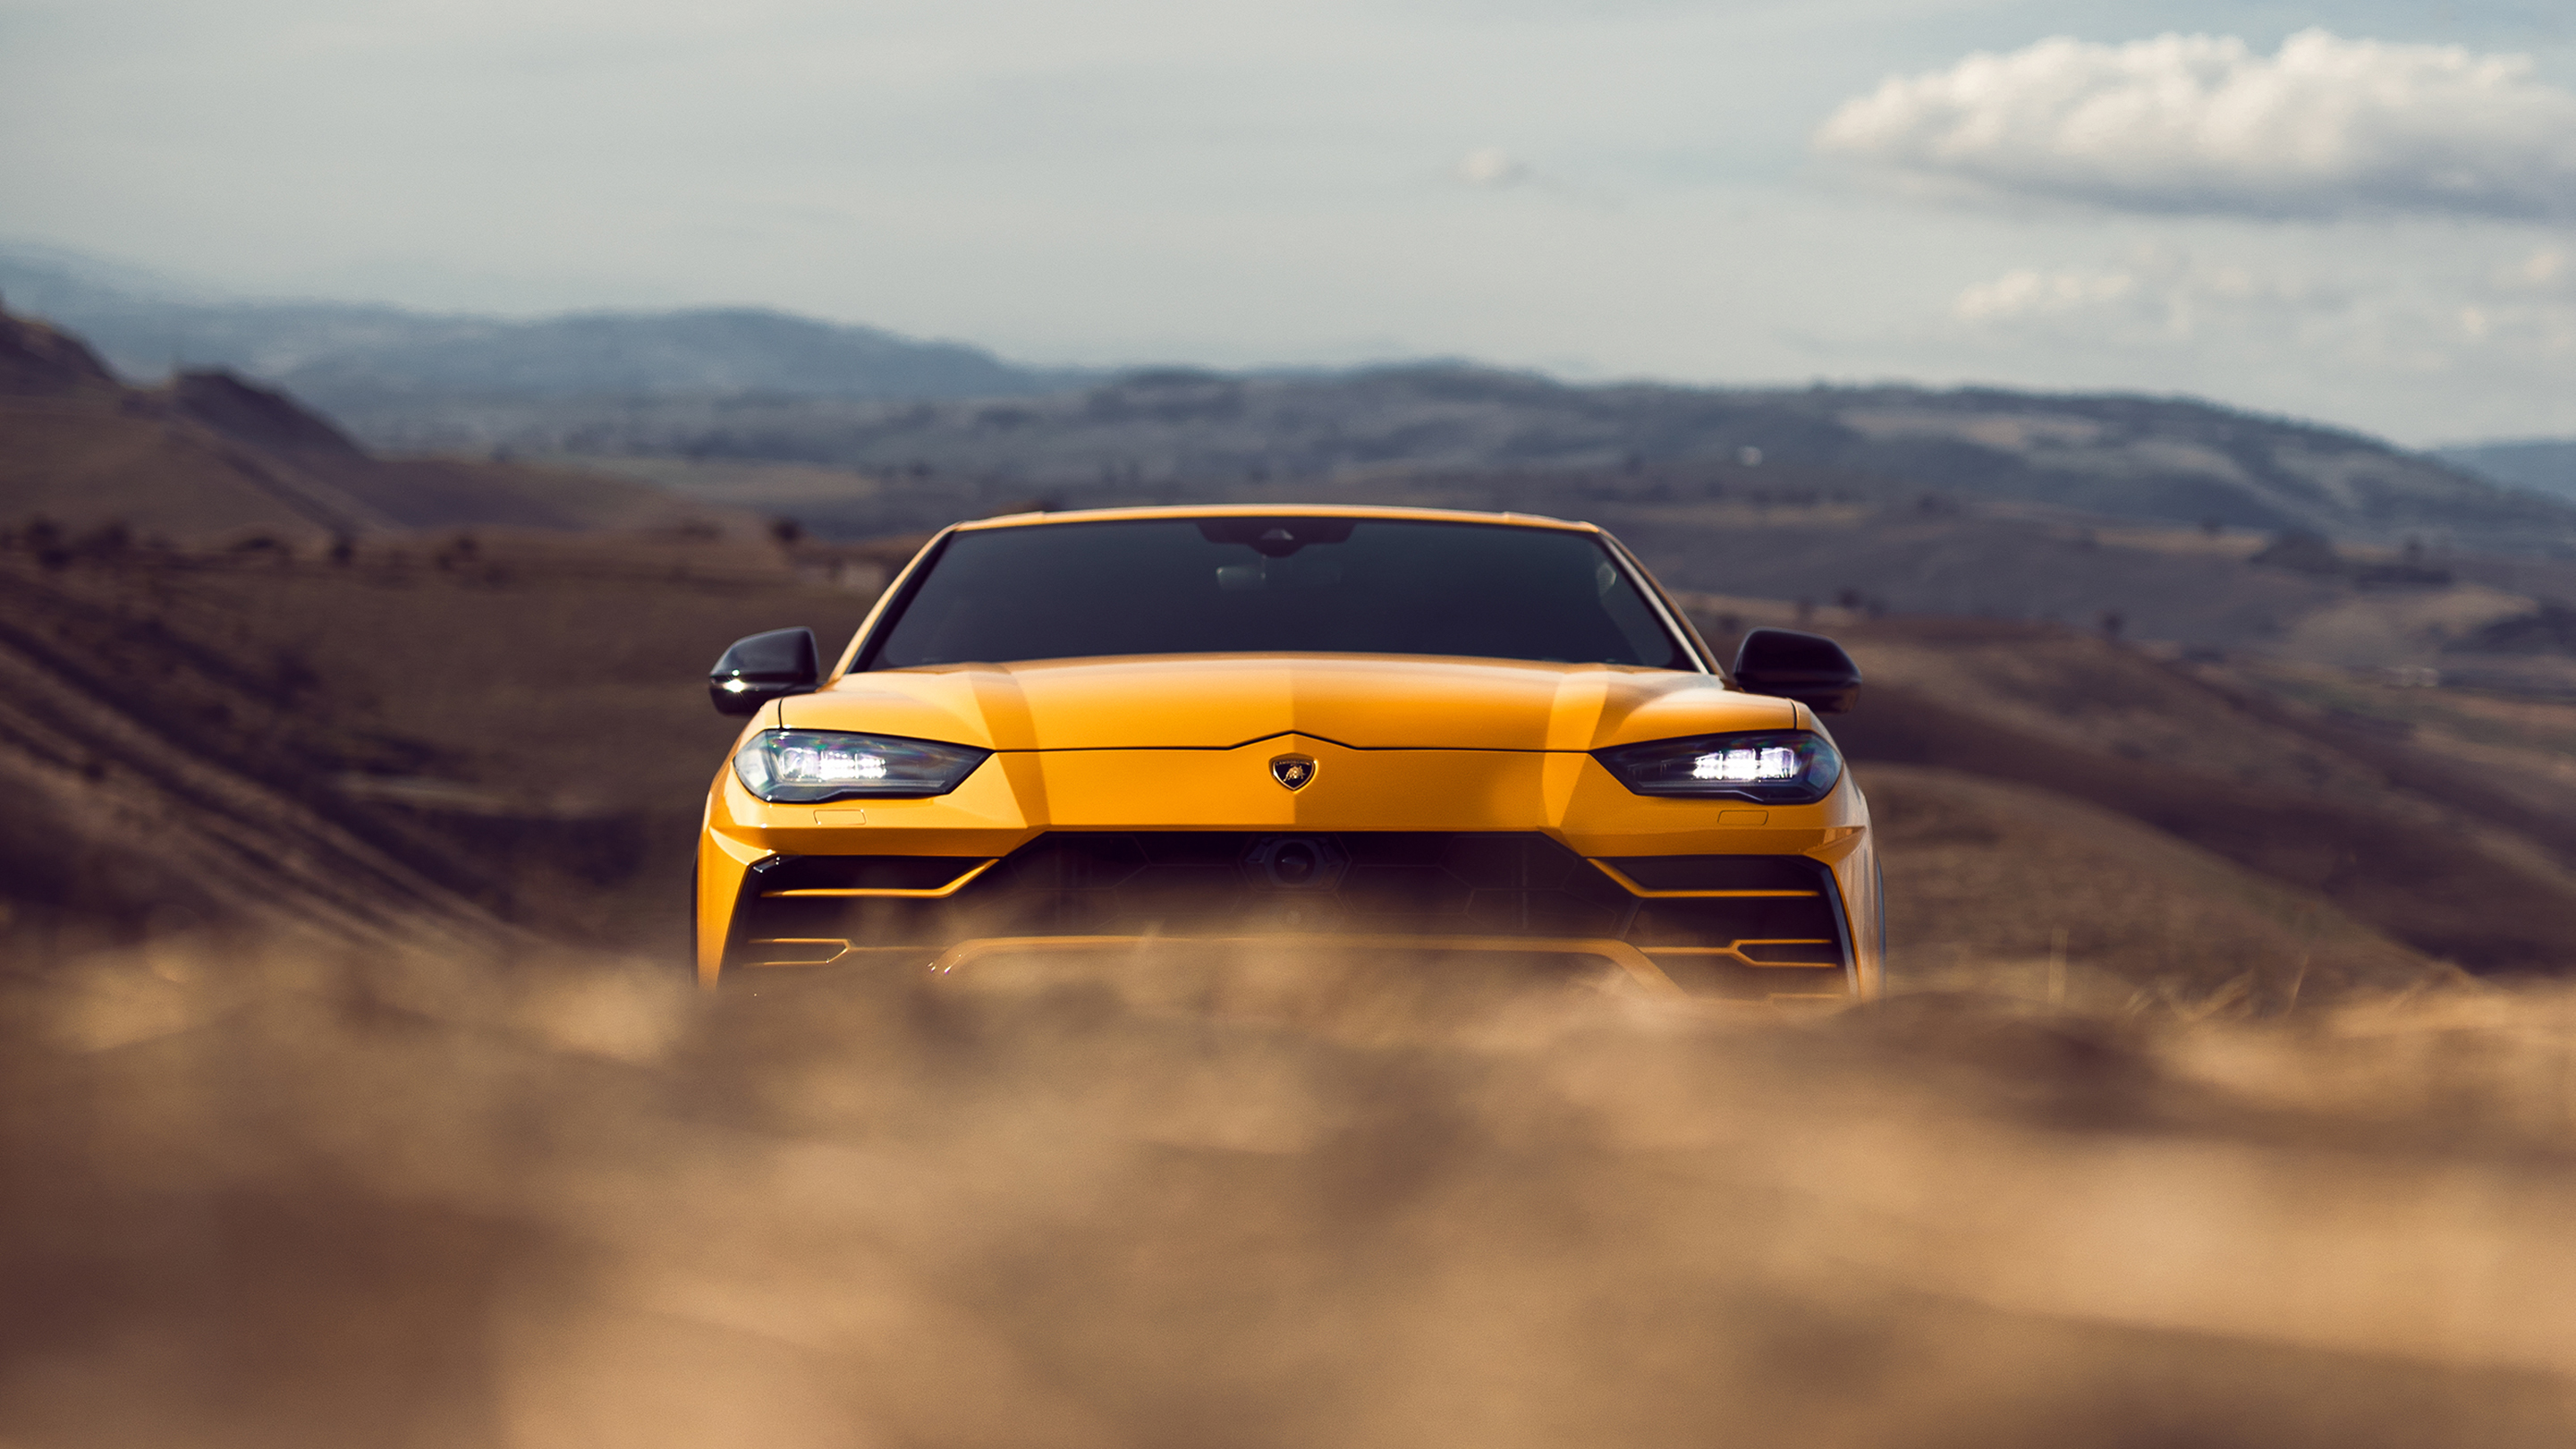 Lamborghini Urus Wallpaper | HD Car Wallpapers | ID #11698